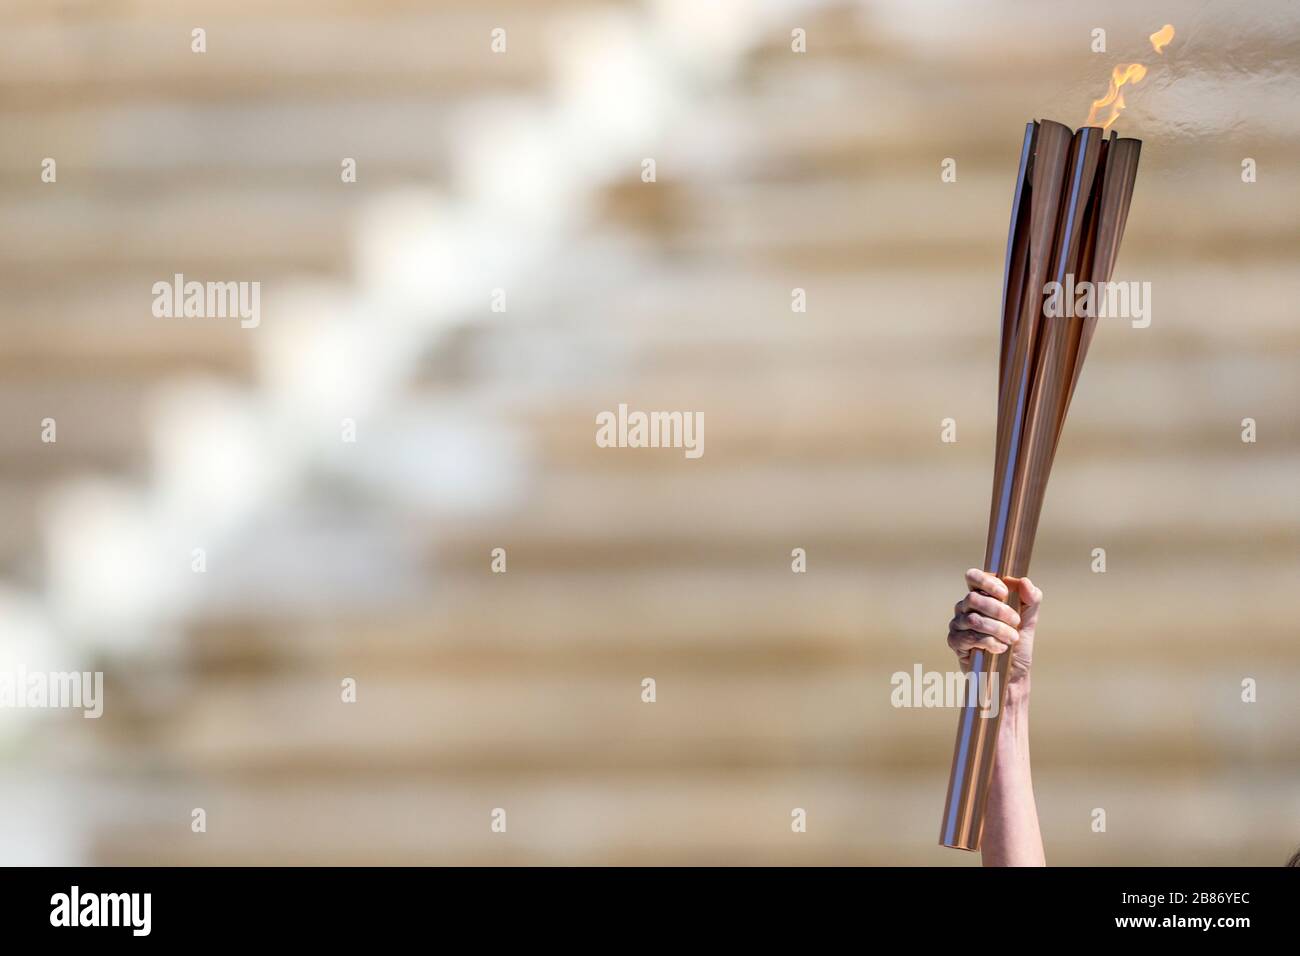 Atenas, Grecia - 19 de marzo de 2020: Ceremonia de entrega de la llama Olímpica para los Juegos Olímpicos de Verano 2020 de Tokio en el Estadio Panathenaic Kallimarmaro Foto de stock